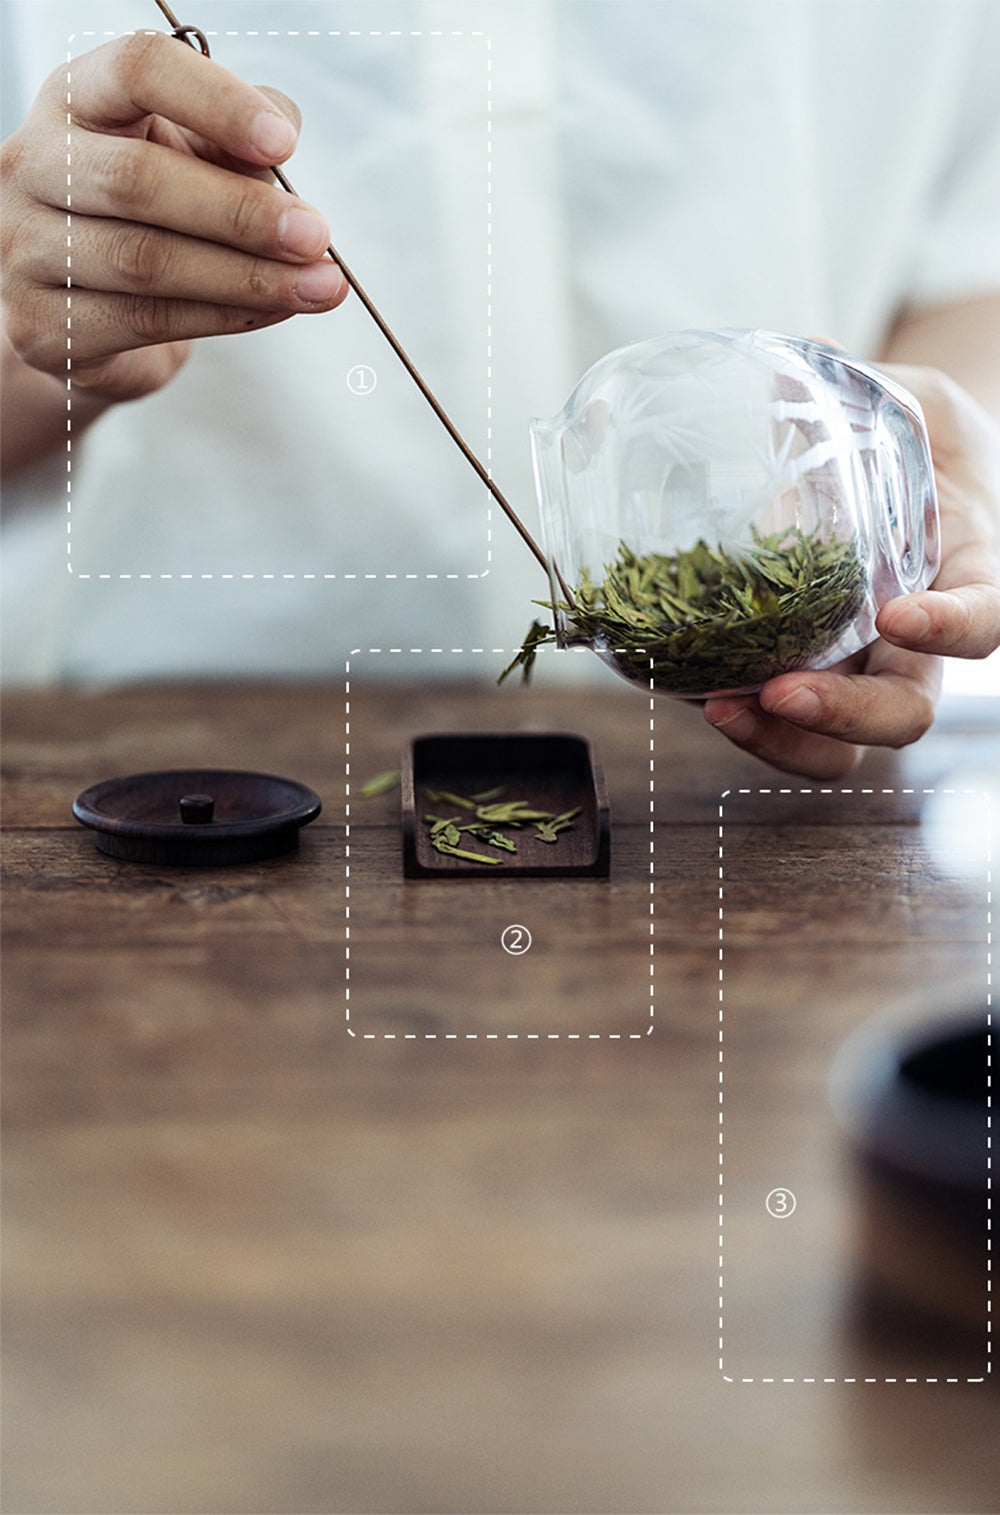 IwaiLoft 手作り ガラスキャニスター 耐熱ガラス 高級 茶筒 茶入 木製蓋 茶道具 茶室 彫刻 お菓子 茶葉 保存容器 防湿保存 G – 茶器・コーヒー用品を選ぶ  - IwaiLoft